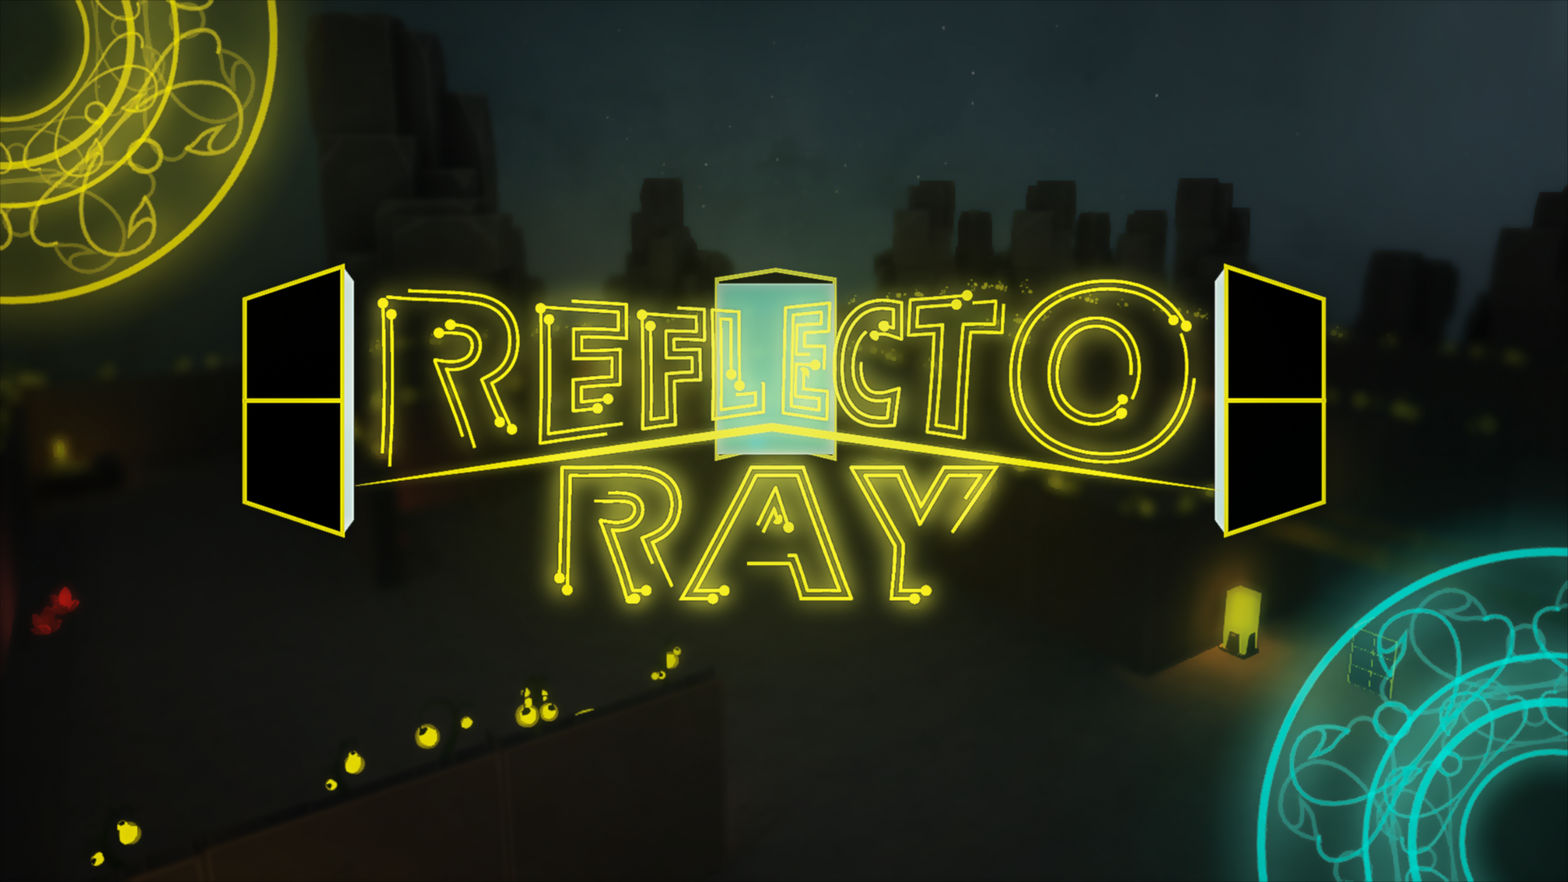 Reflecto Ray